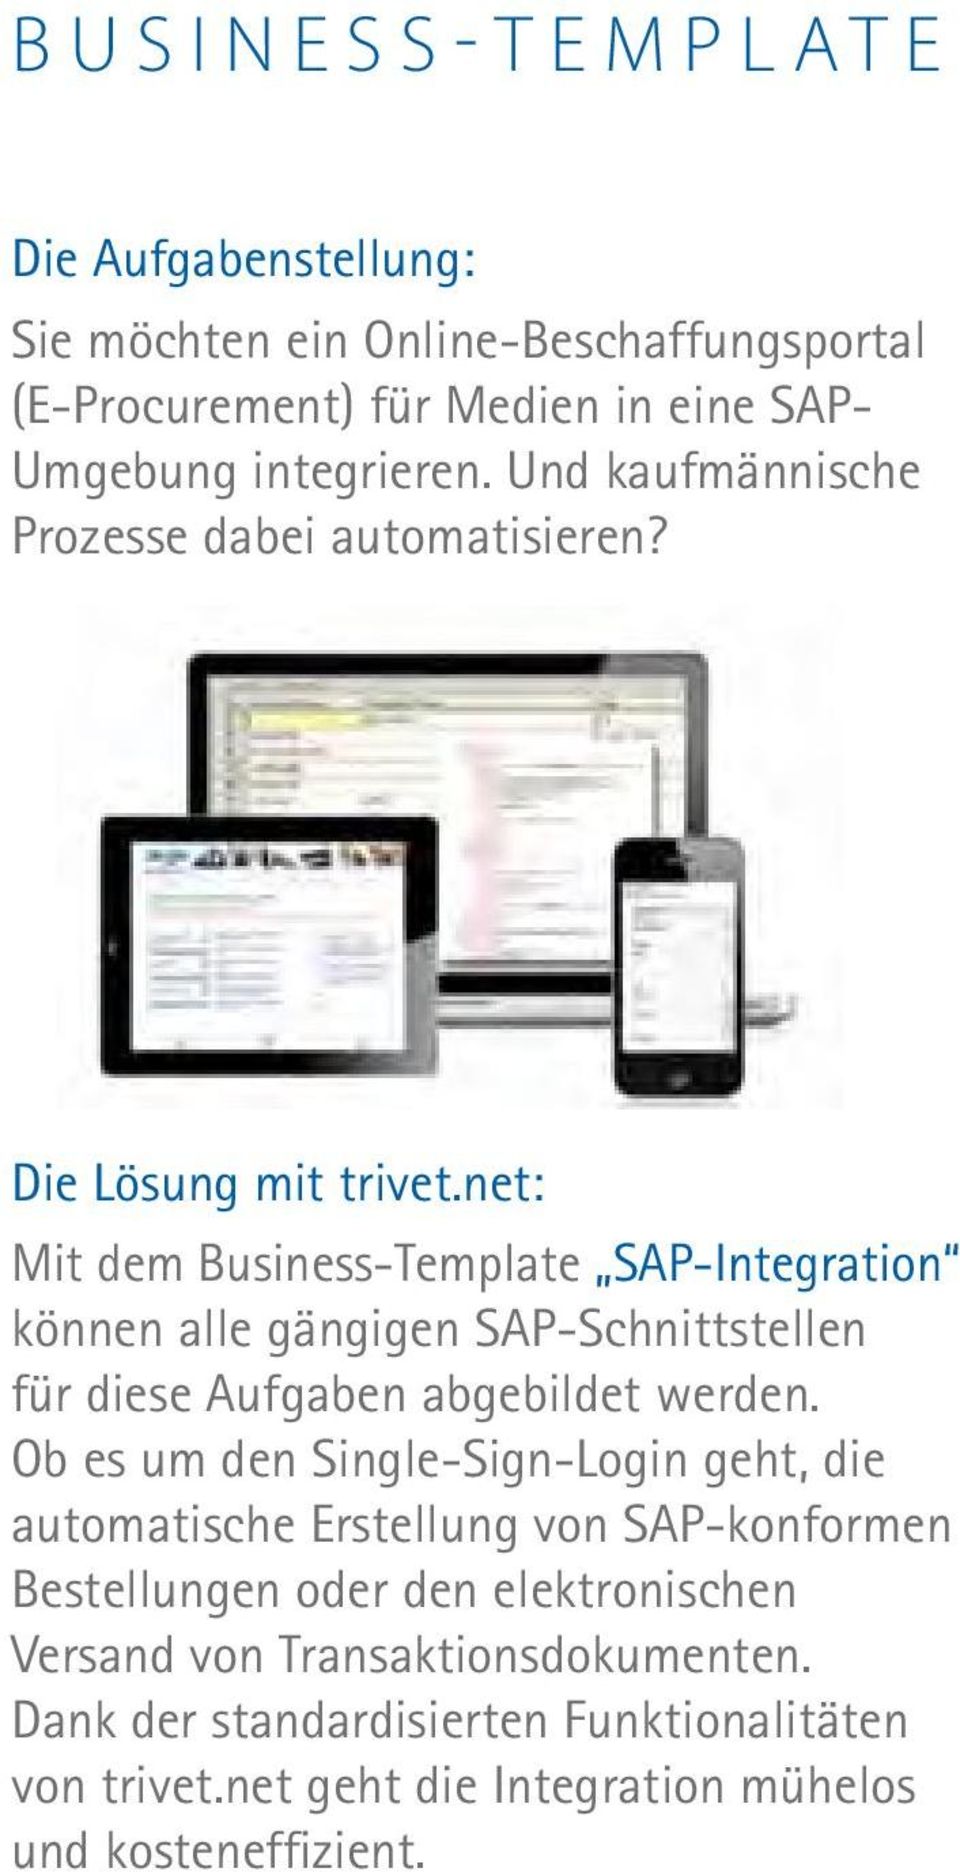 net: Mit dem Business-Template SAP-Integration können alle gängigen SAP-Schnittstellen für diese Aufgaben abgebildet werden.